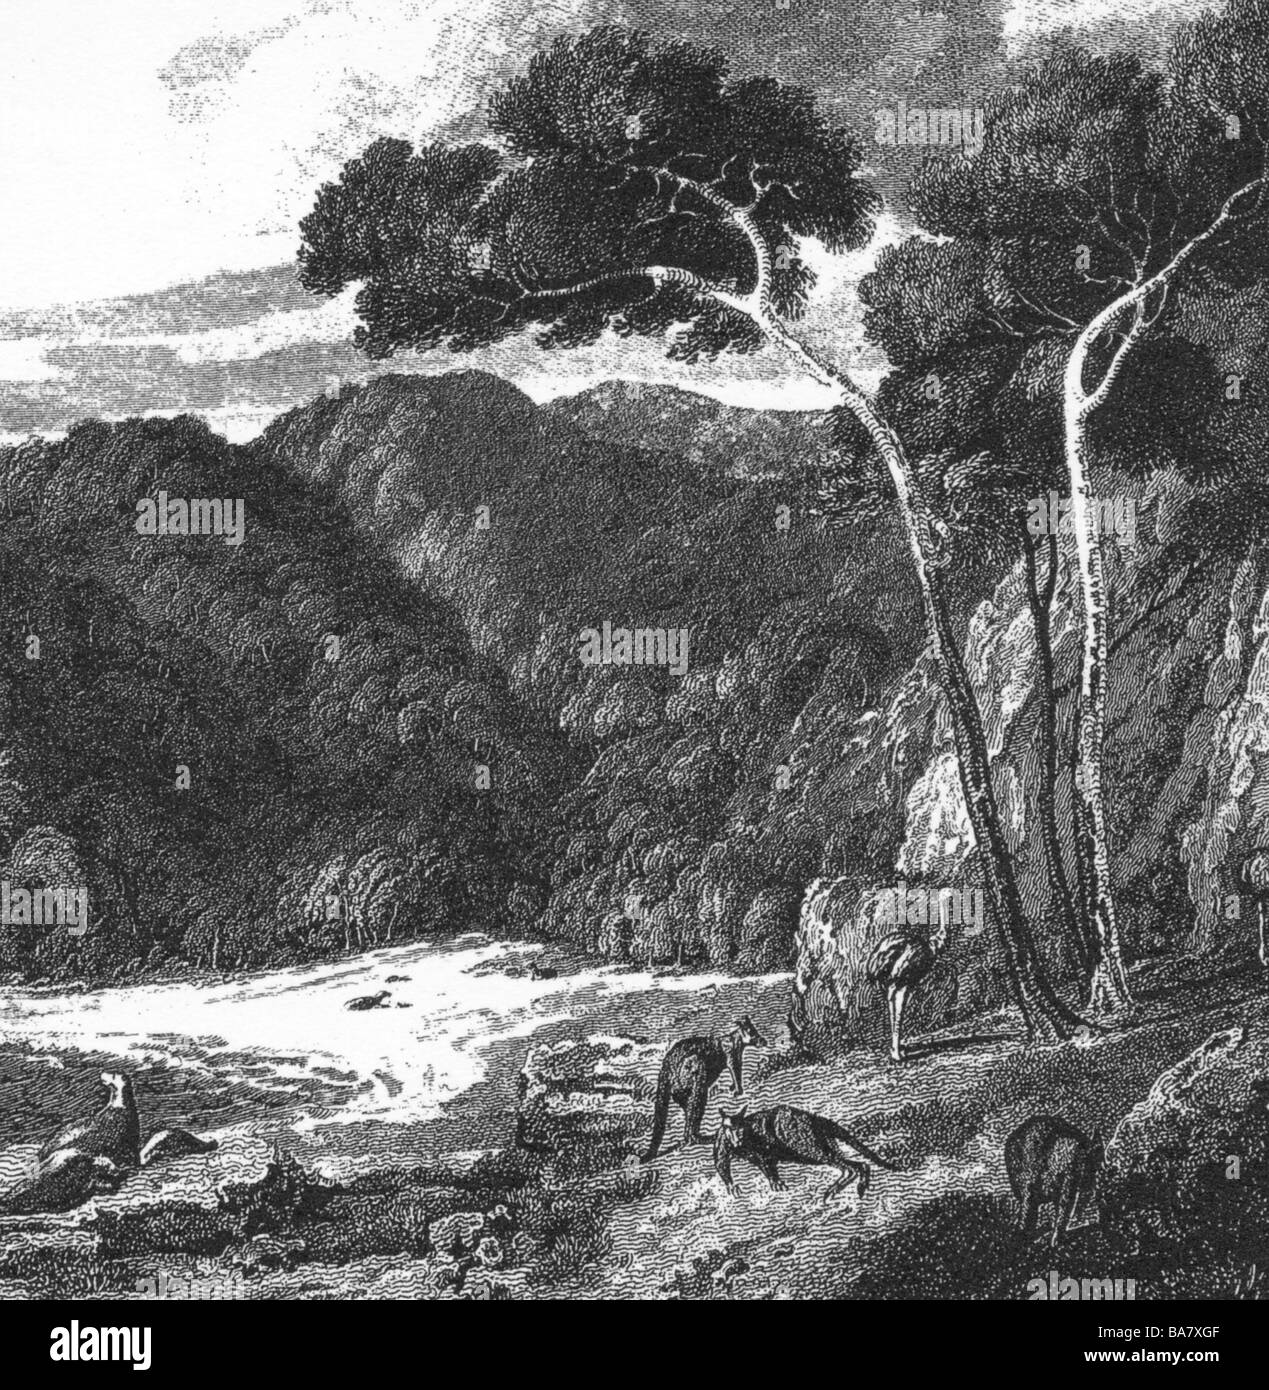 Flinders, Matthew, 16.3.1774 - 19.7.1814, British explorer, expeditions 1795 - 1801, Kanguru Island, drawing from 1802, Stock Photo